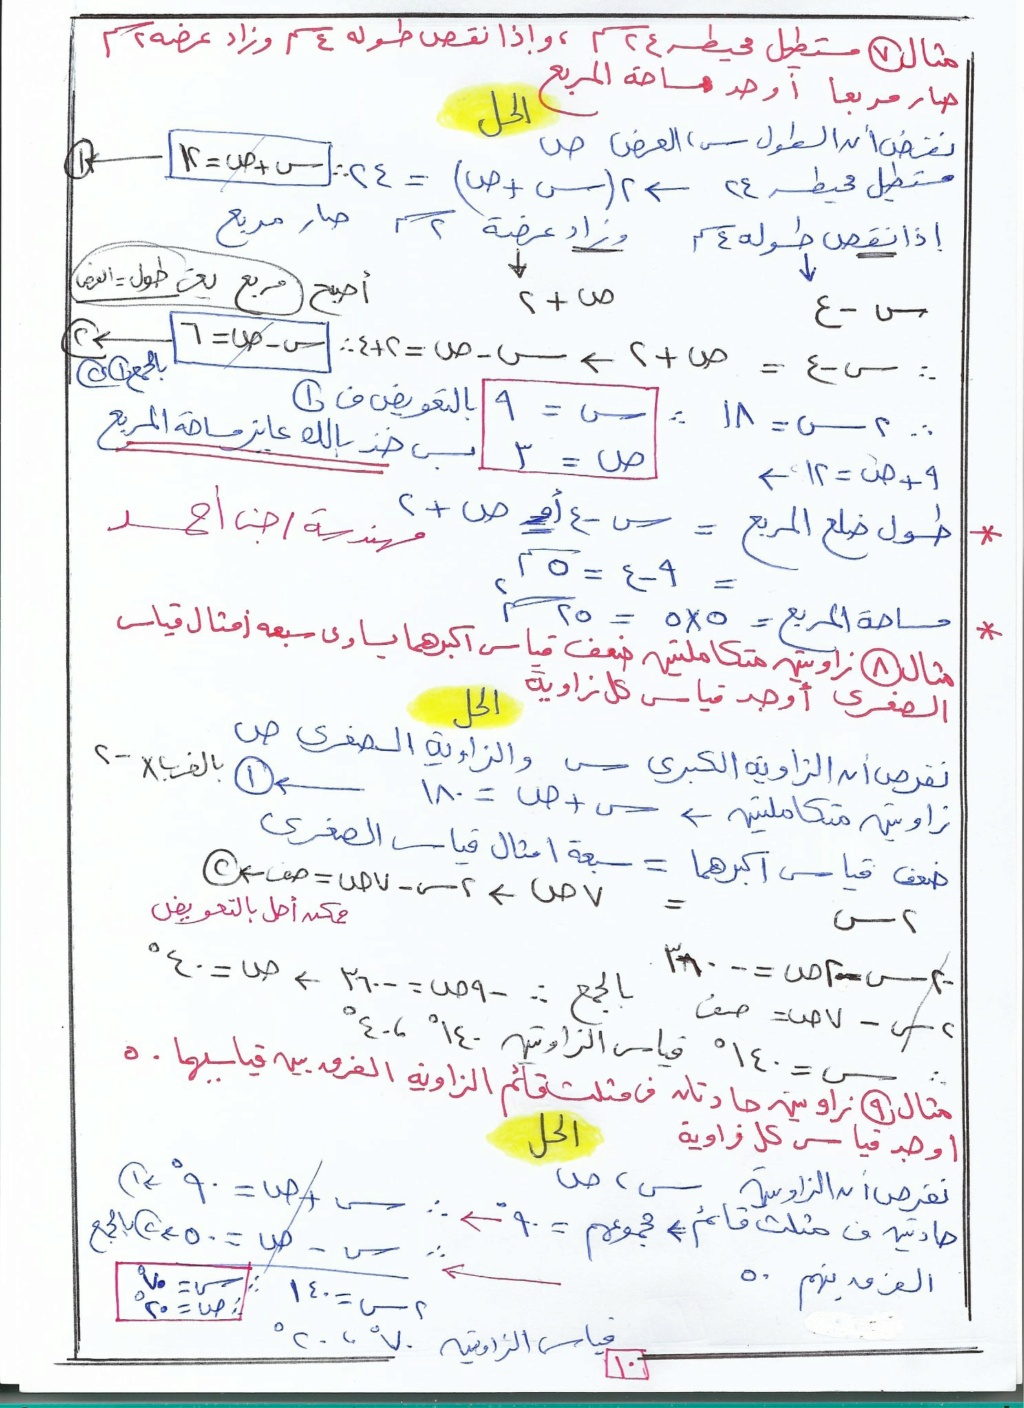 حل معادلتين من الدرجة الأولى فى متغيرين بيانيا وجبريا جبر تالتة اعدادى ترم ثاني أ. جنى أحمد  10160